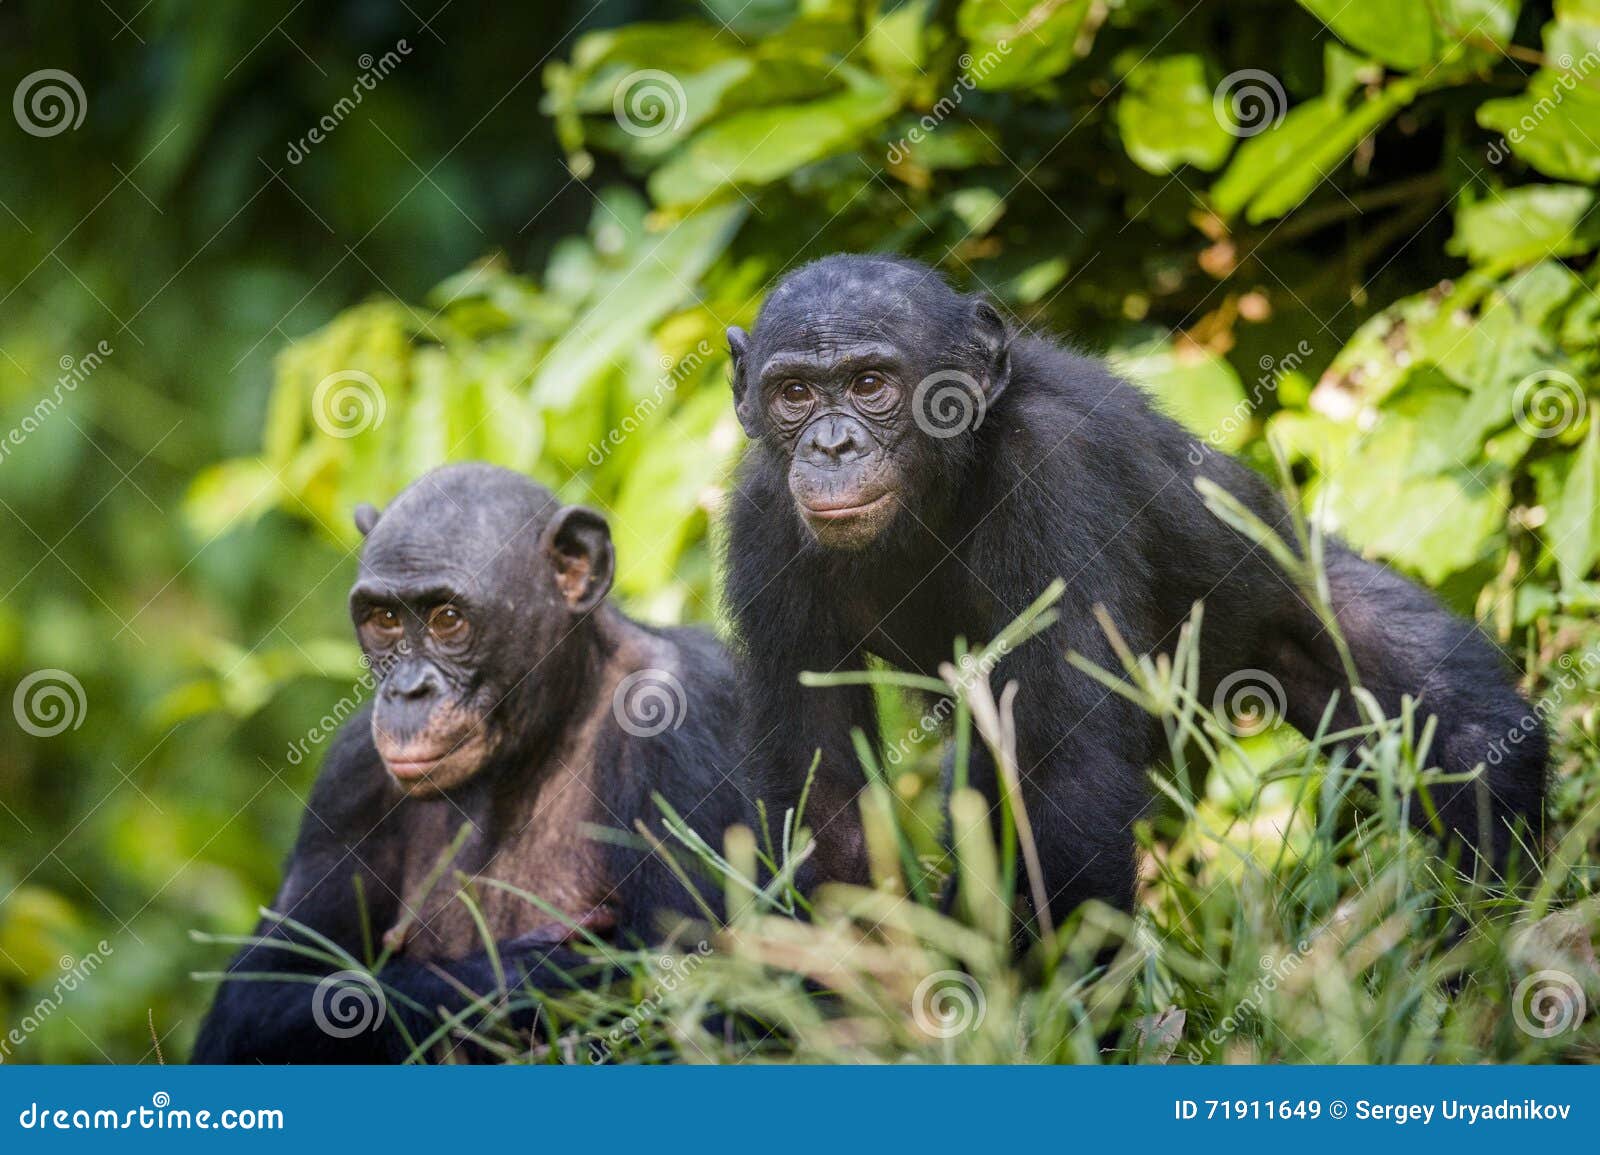 bonobos in natural habitat. green natural background. the bonobo ( pan paniscus)